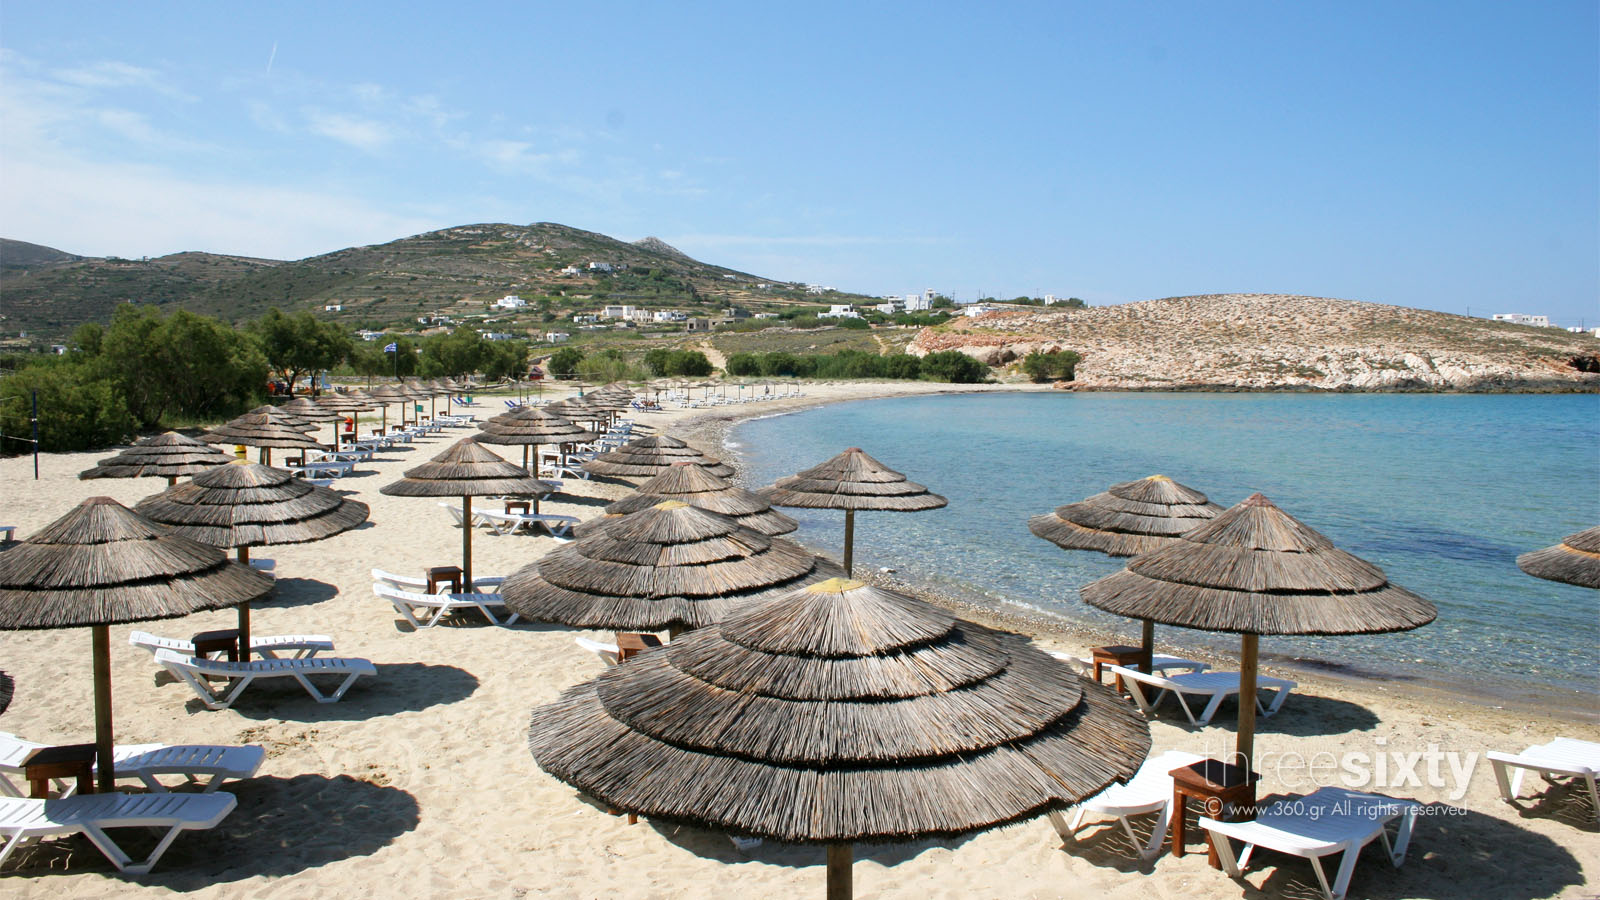 Le più belle spiagge di Paros